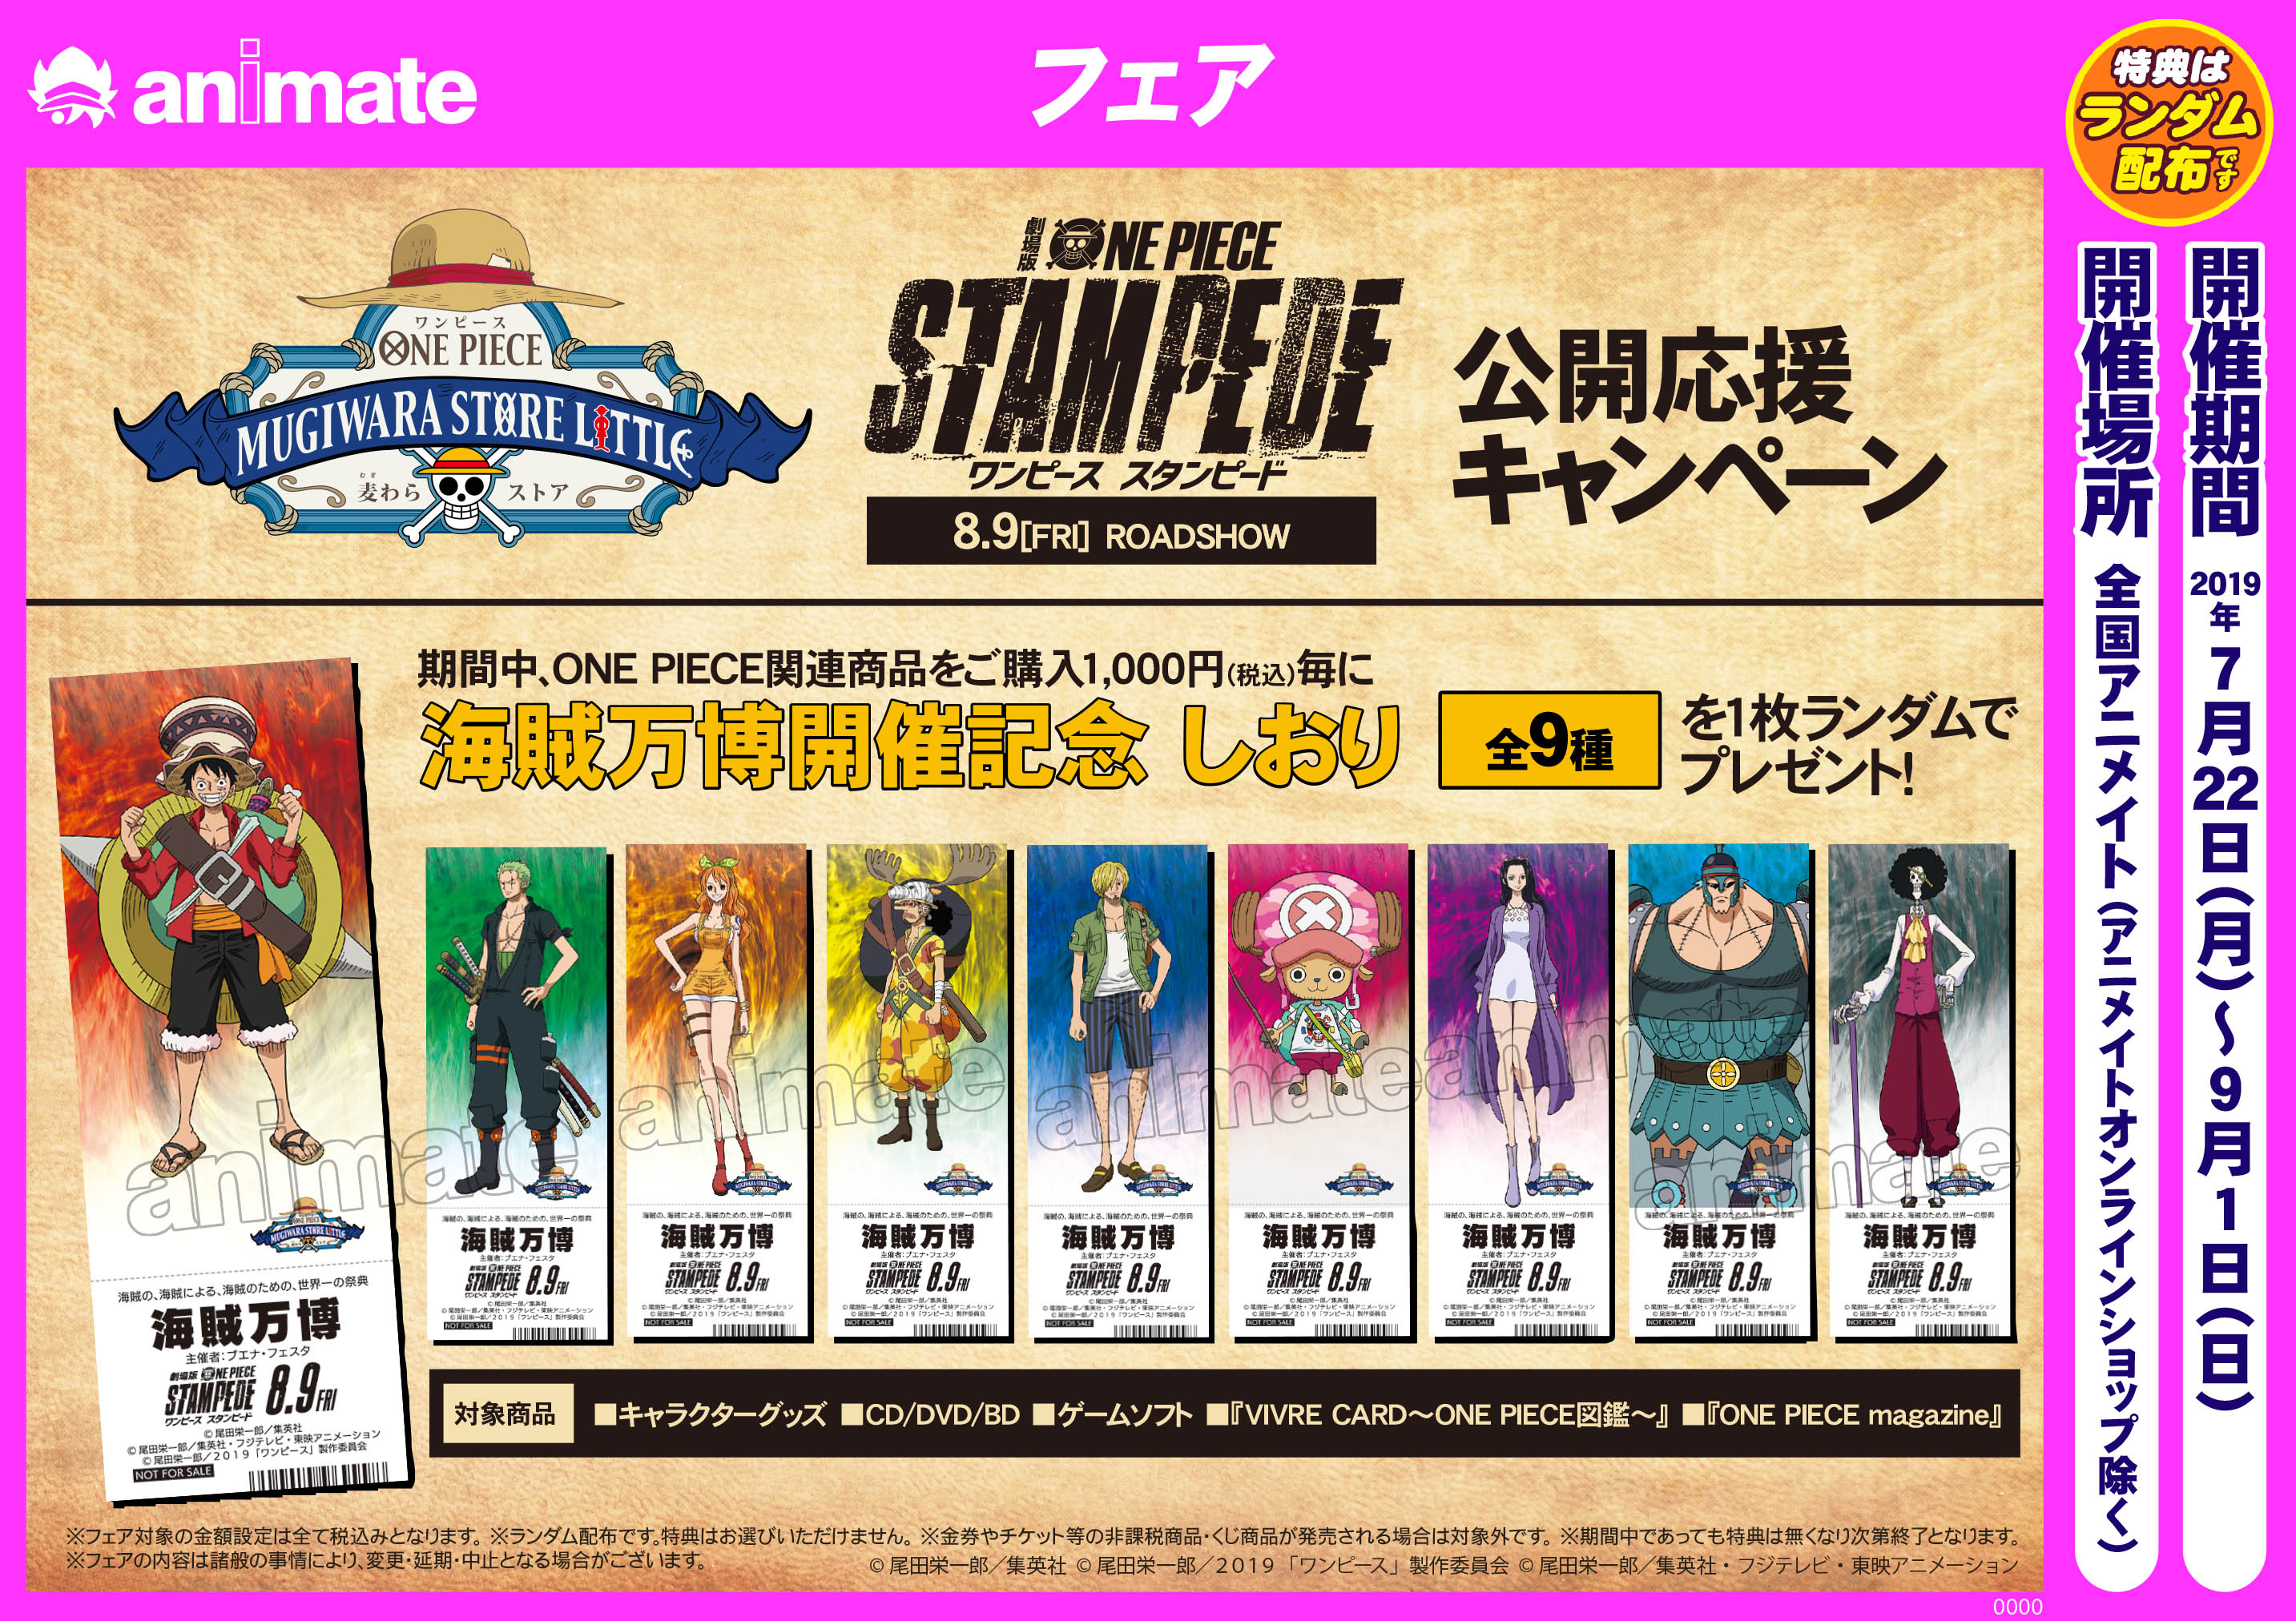 7 22 9 1開催 劇場版 One Piece Stampede 公開応援キャンペーン アニメイトフジグラン東広島